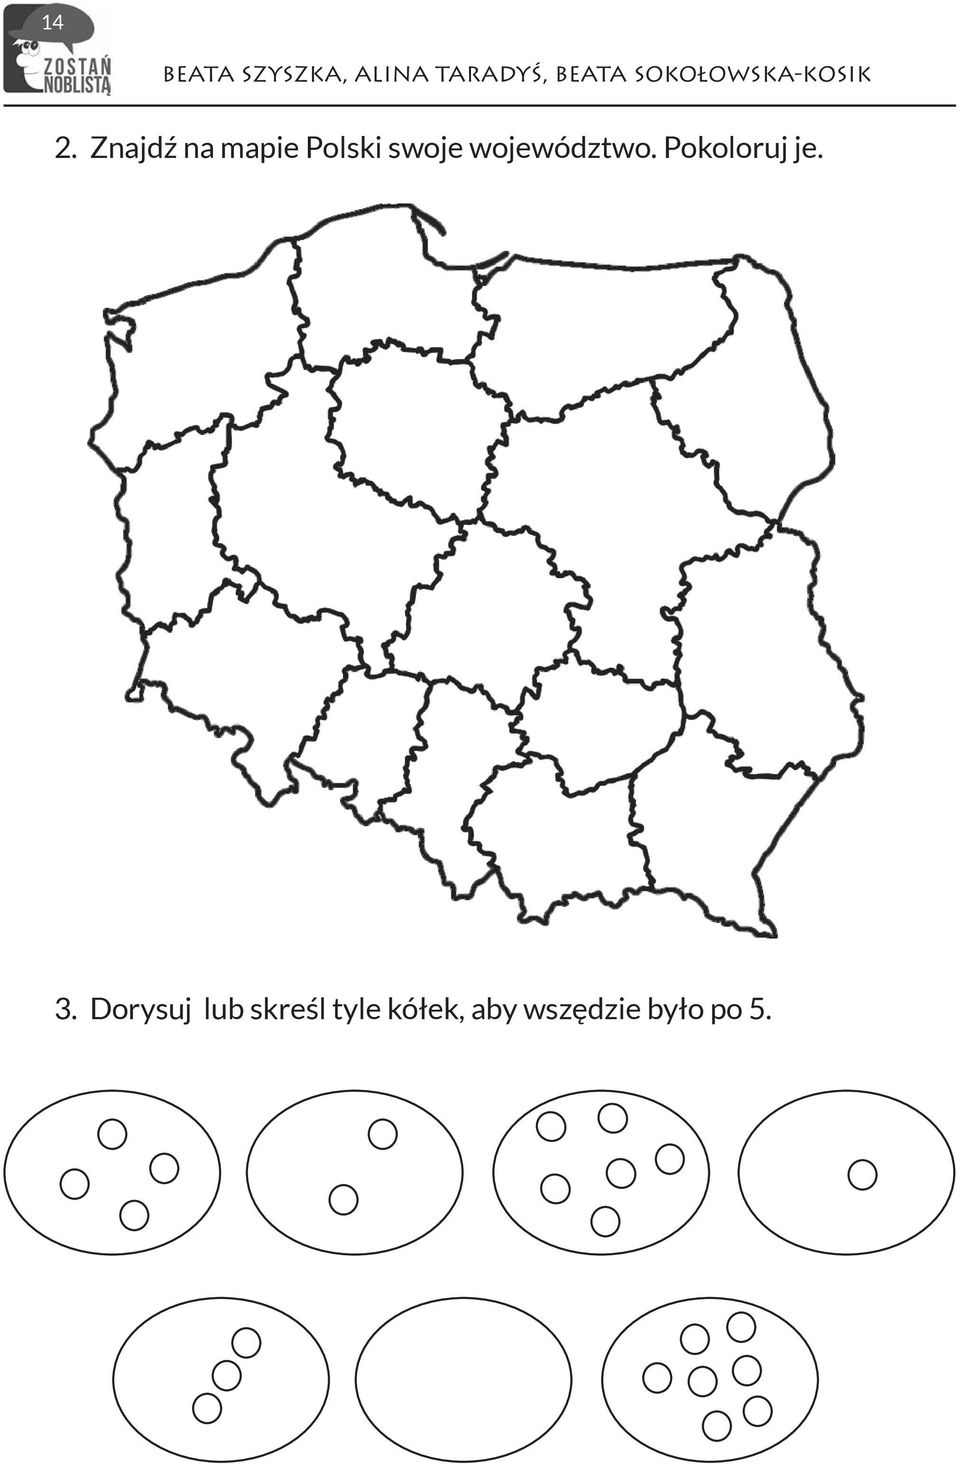 Znajdź na mapie Polski swoje województwo.